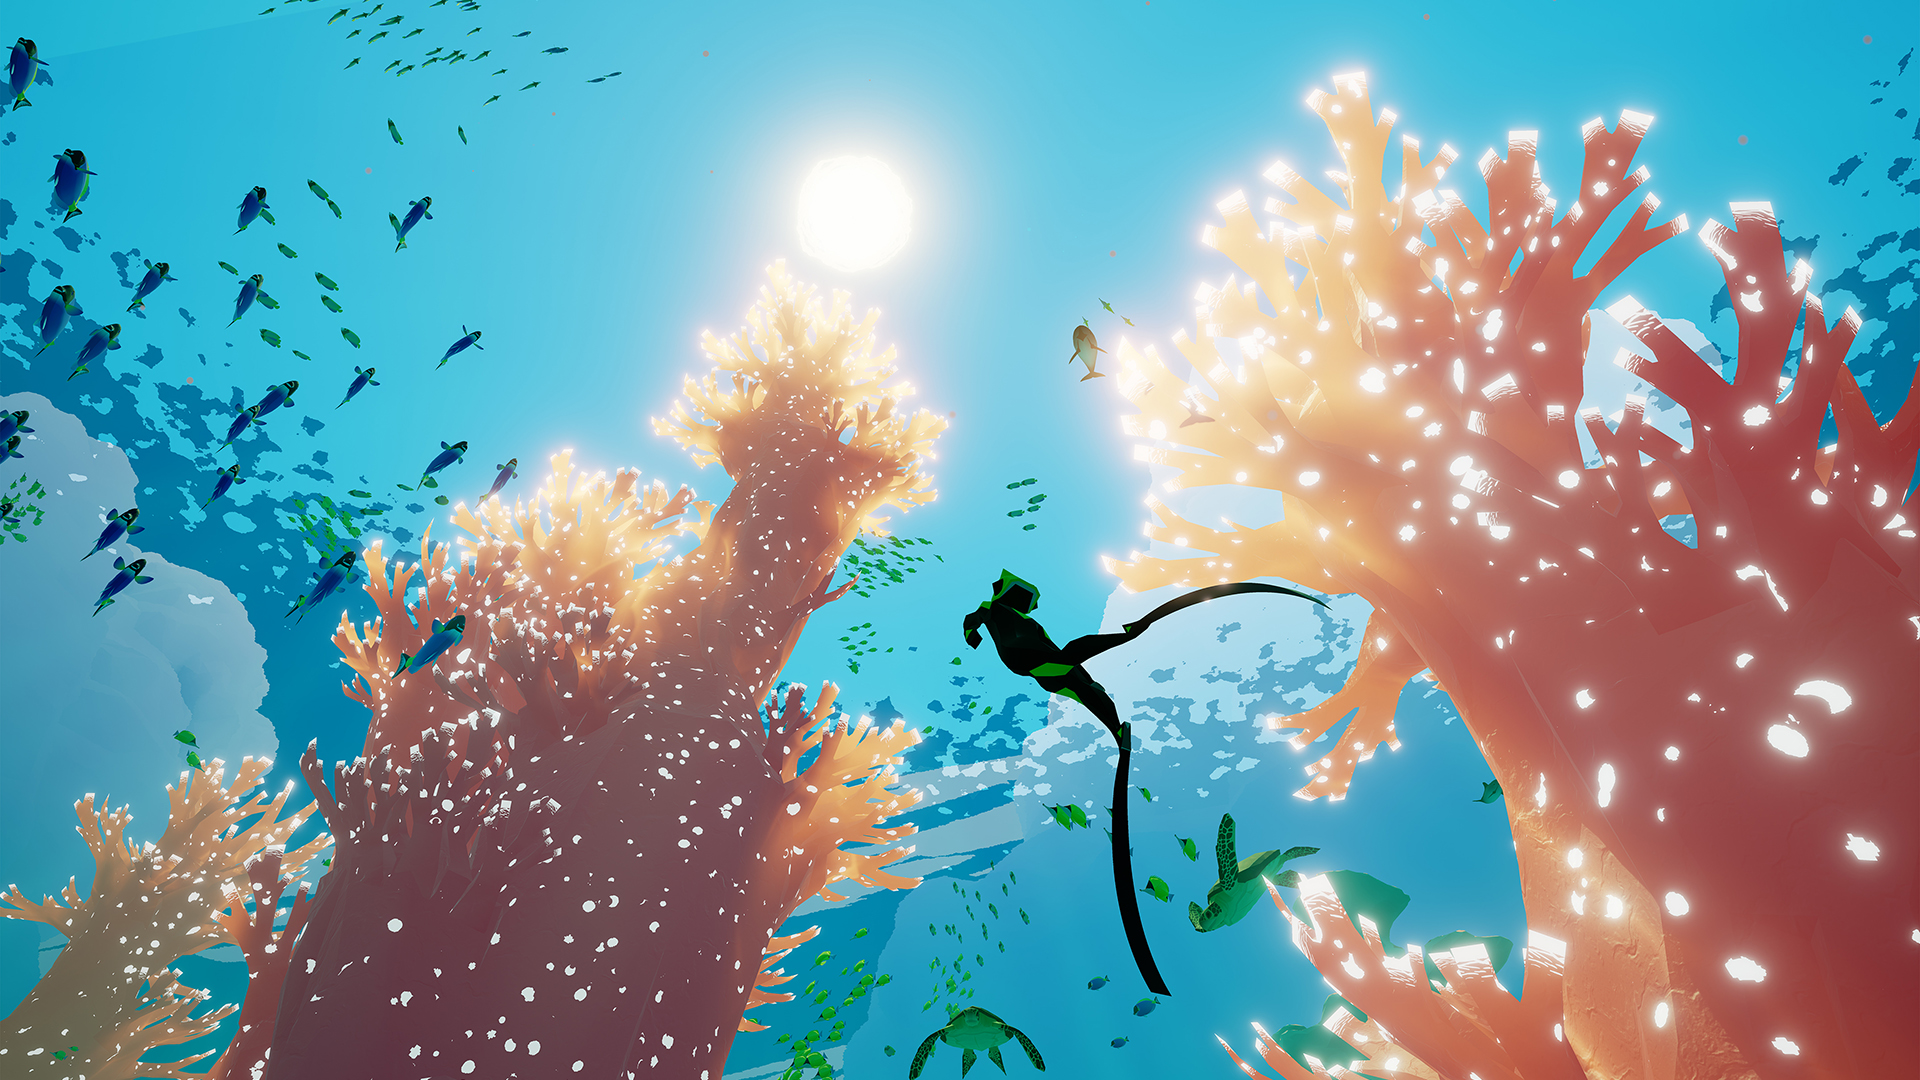 深海探索アドベンチャーゲーム『ABZÛ』のPC版がEpic Gamesストアで無料配布へ。『風ノ旅ビト』クリエイターが手掛けた作品_006